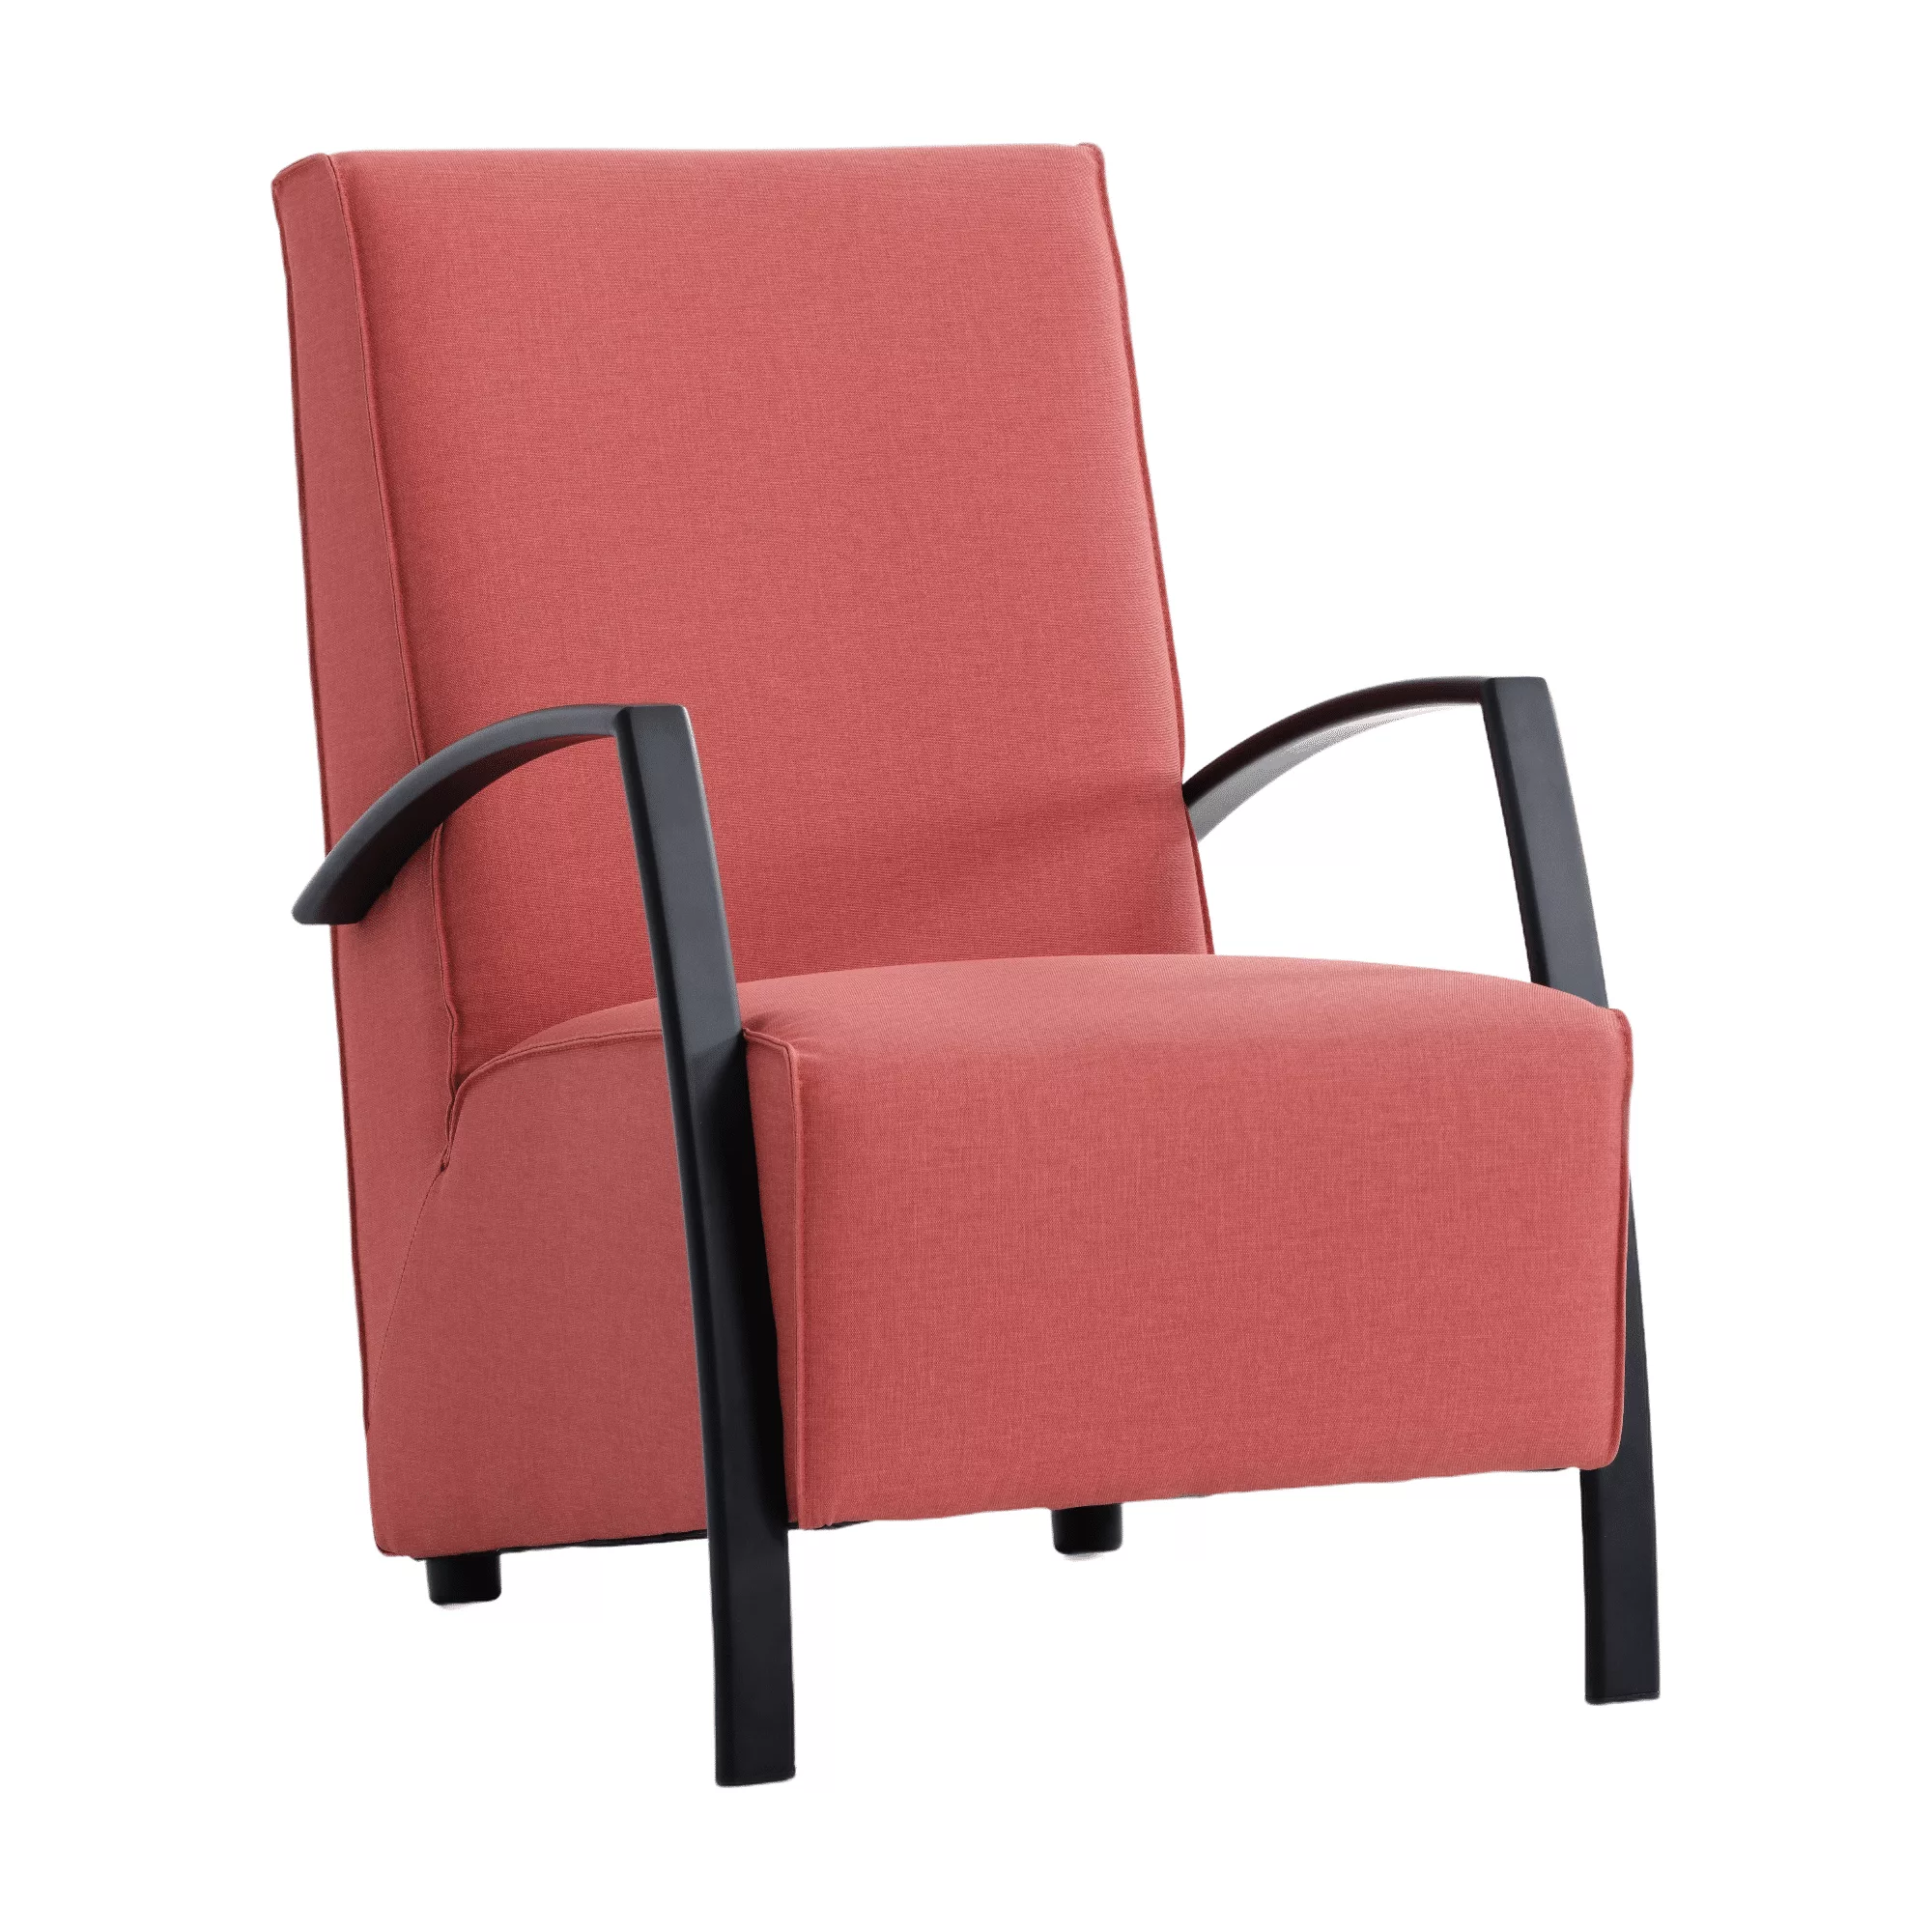 Rode fauteuil met zwarte design armleuningen.